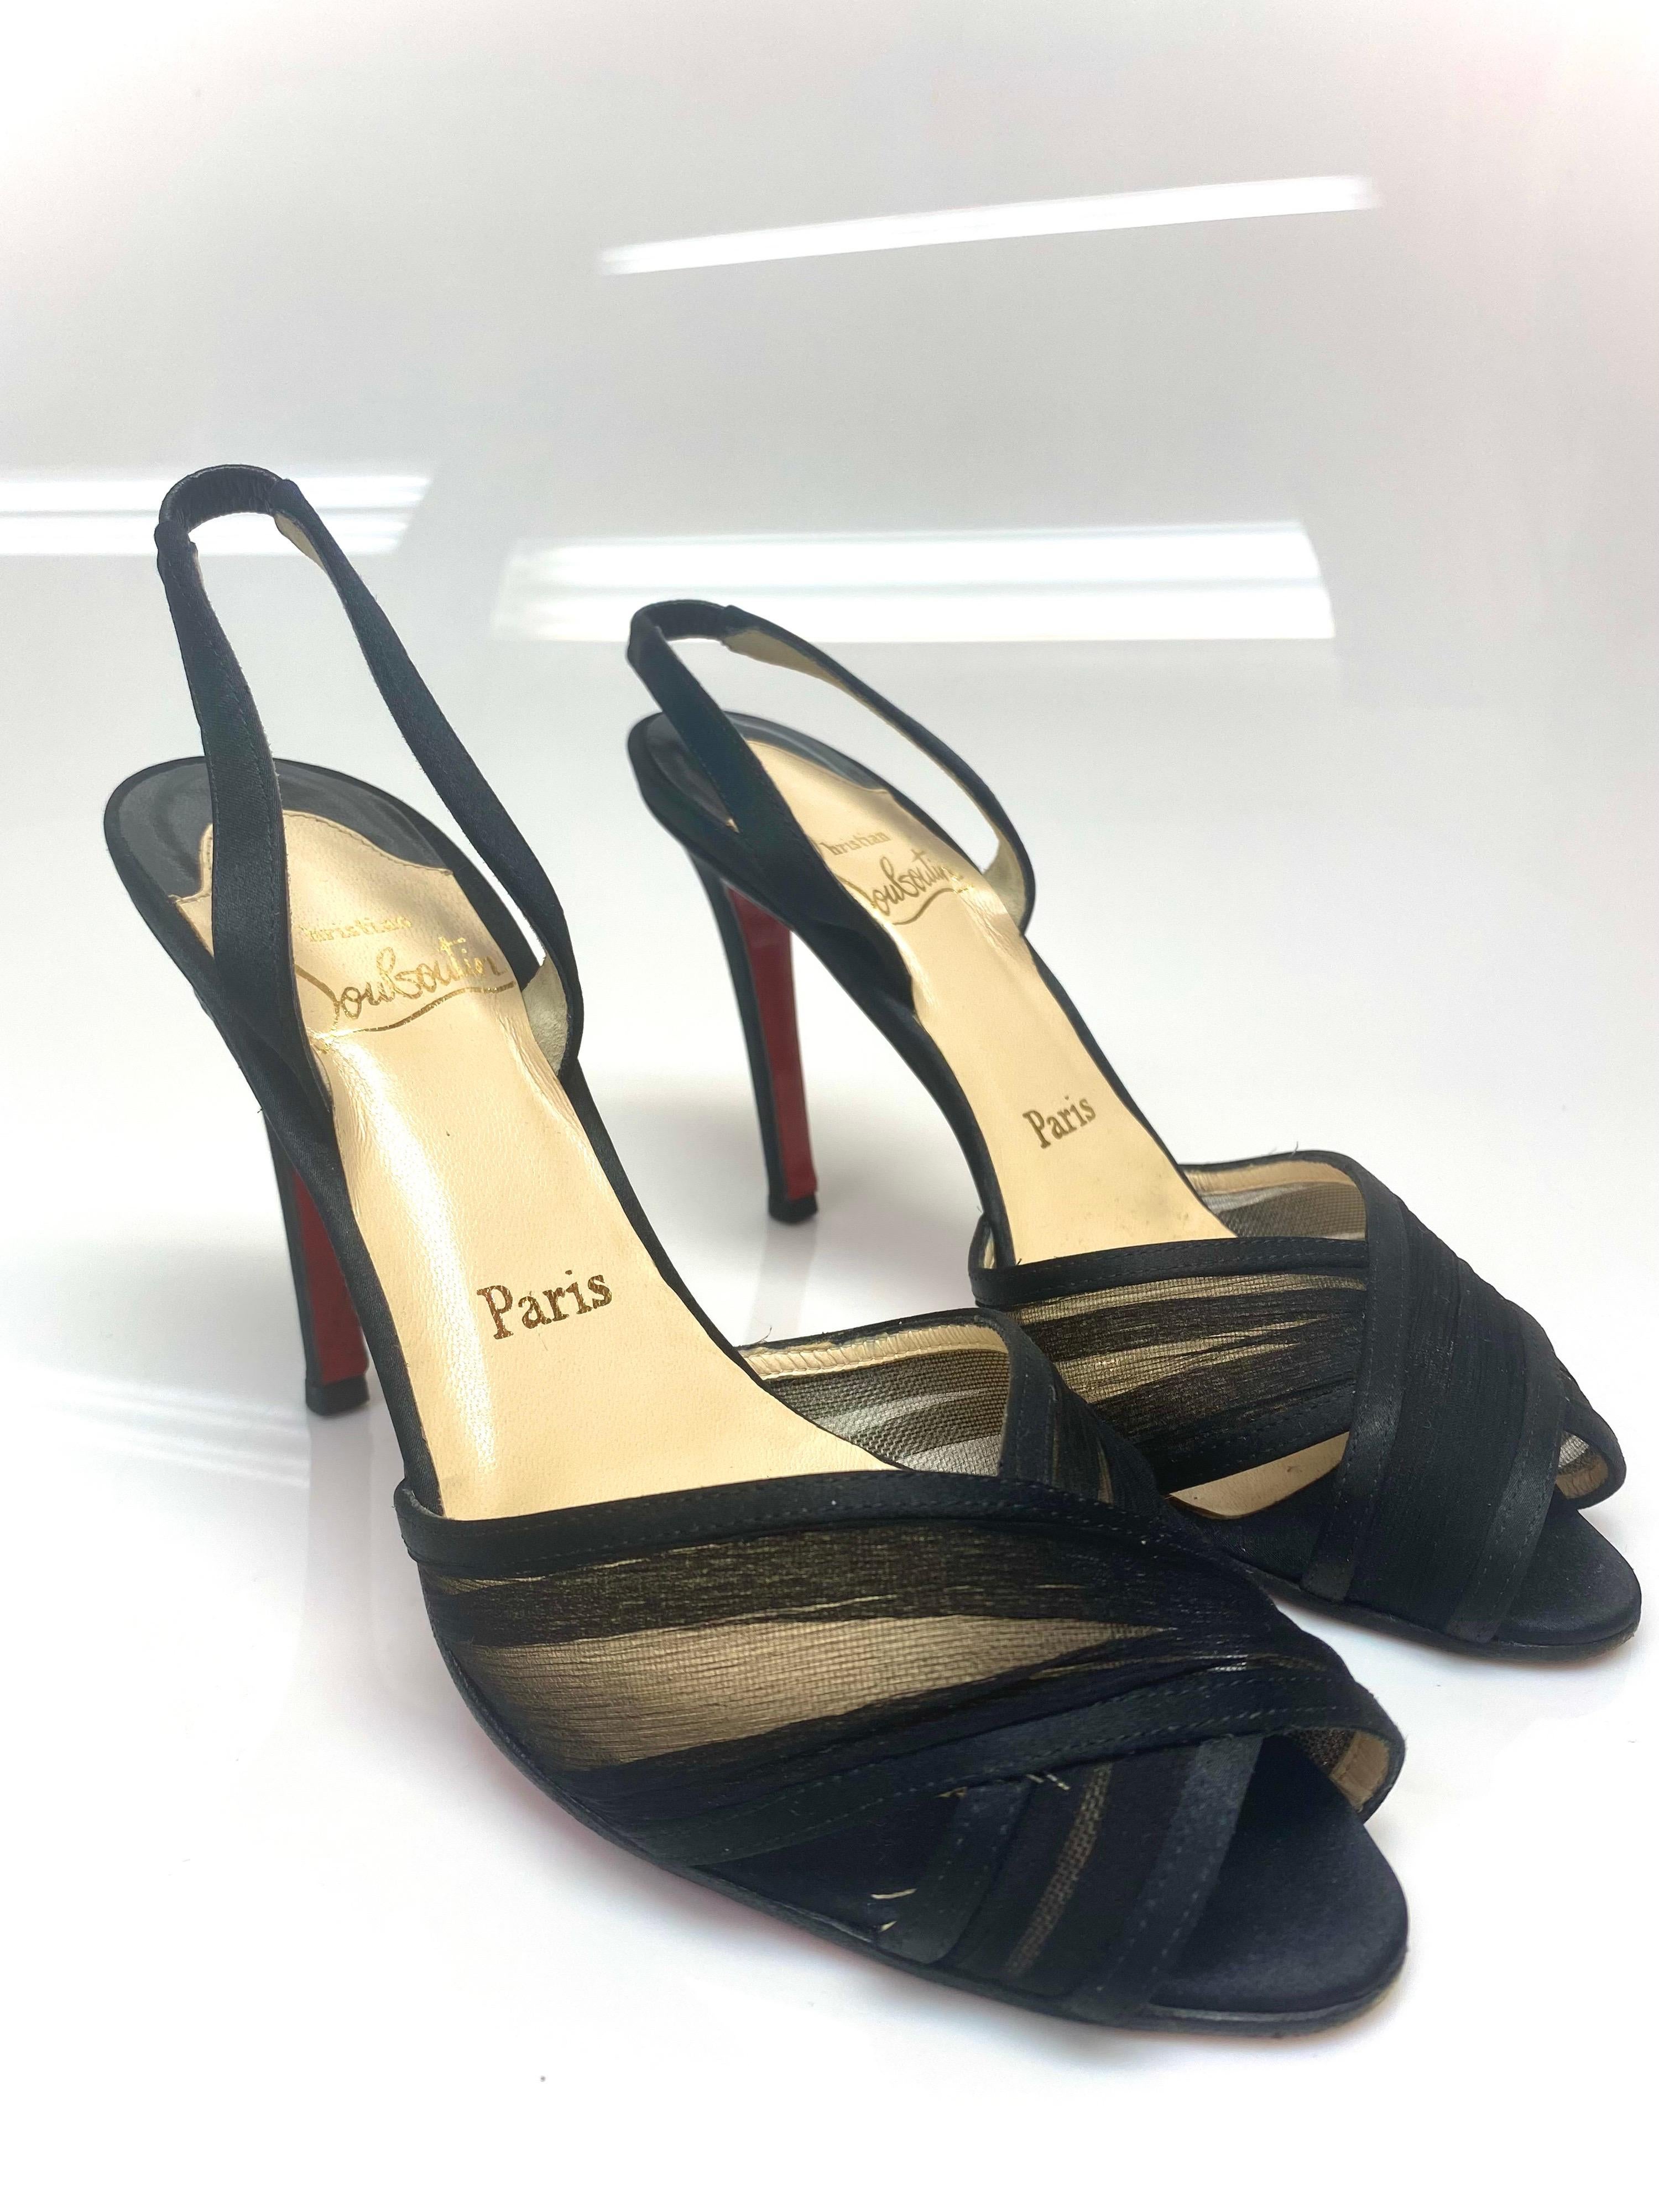 Diese Sandalen mit Absatz von Christian Louboutin sind ein Spiegelbild der makellosen Schuhkunst des Labels. Schöne schwarze Criss-Cross-Details säumen die Vorderseite des Schuhs und sie sind mit Slingbacks gesichert. Der Zustand ist gut, aber es